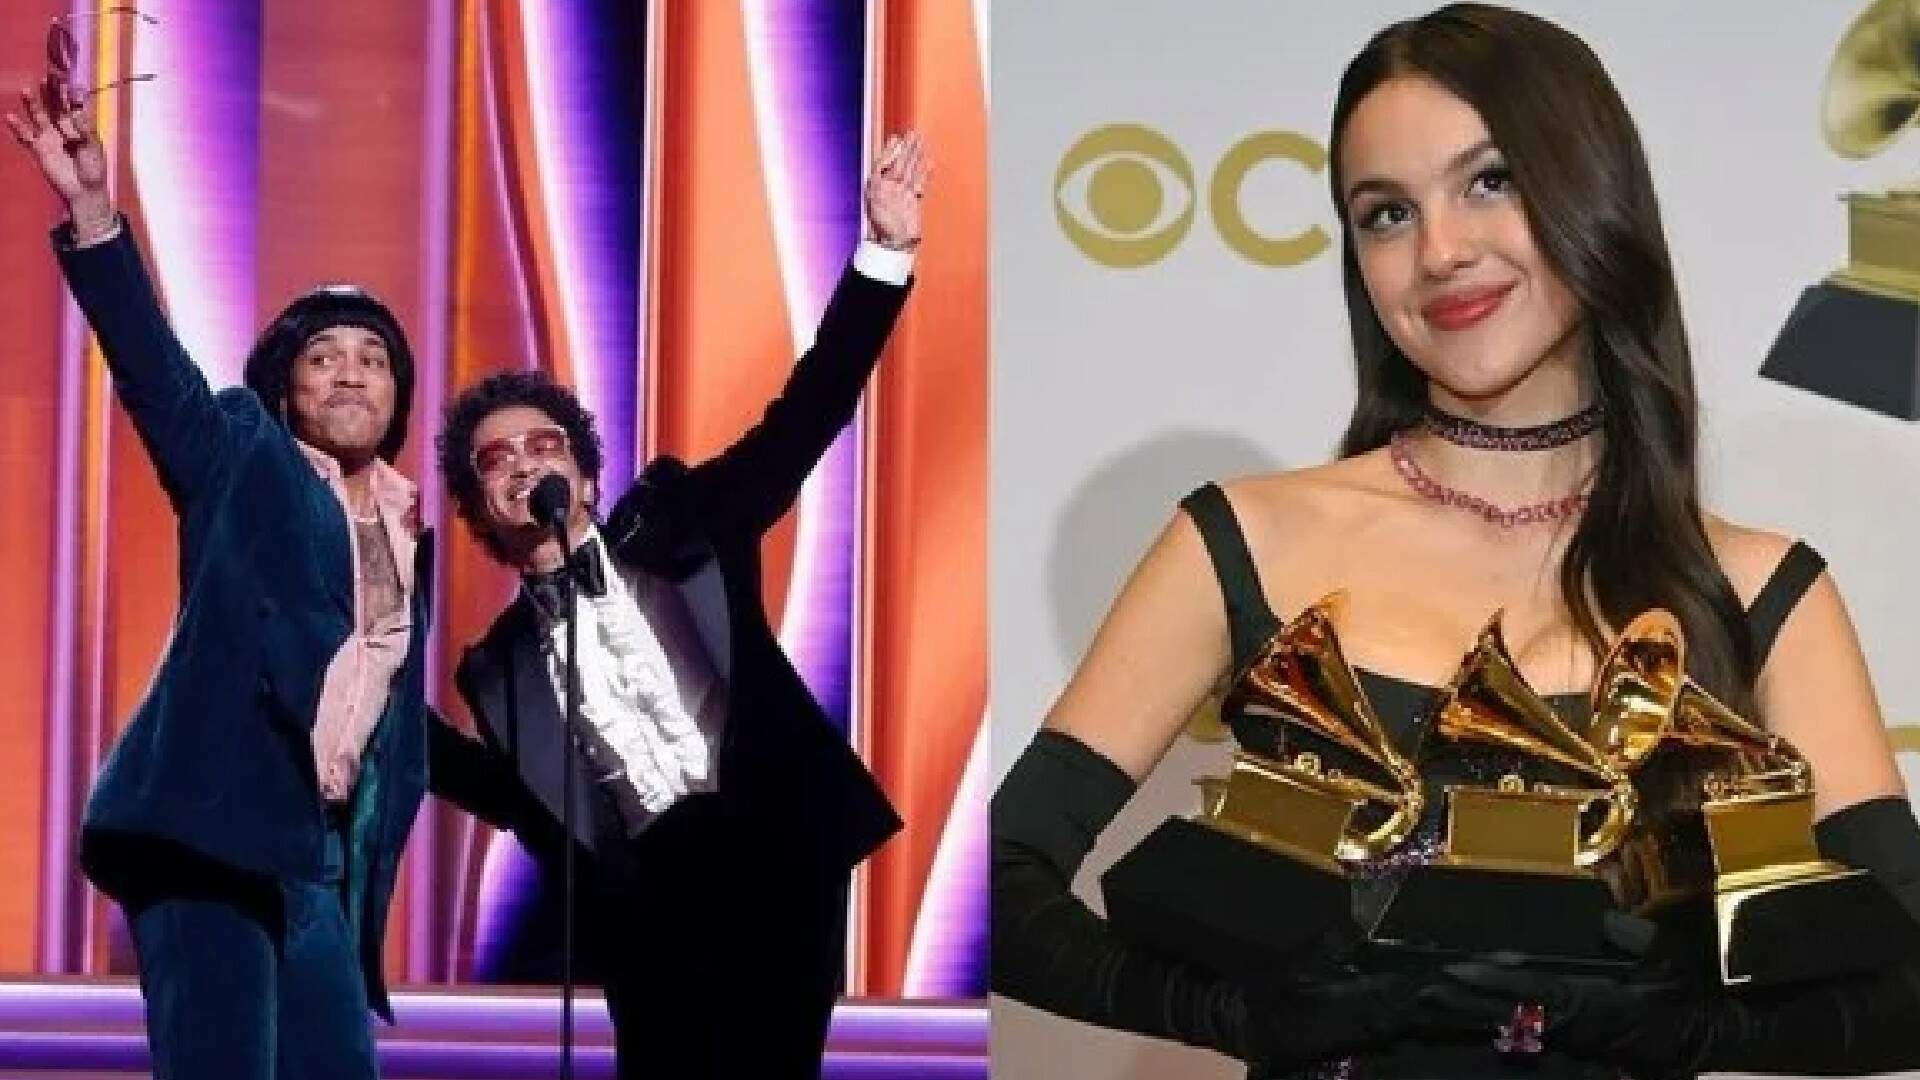 Quem ganhou o Grammy 2022? confira os destaques e vencedores da premiação musical - Metropolitana FM